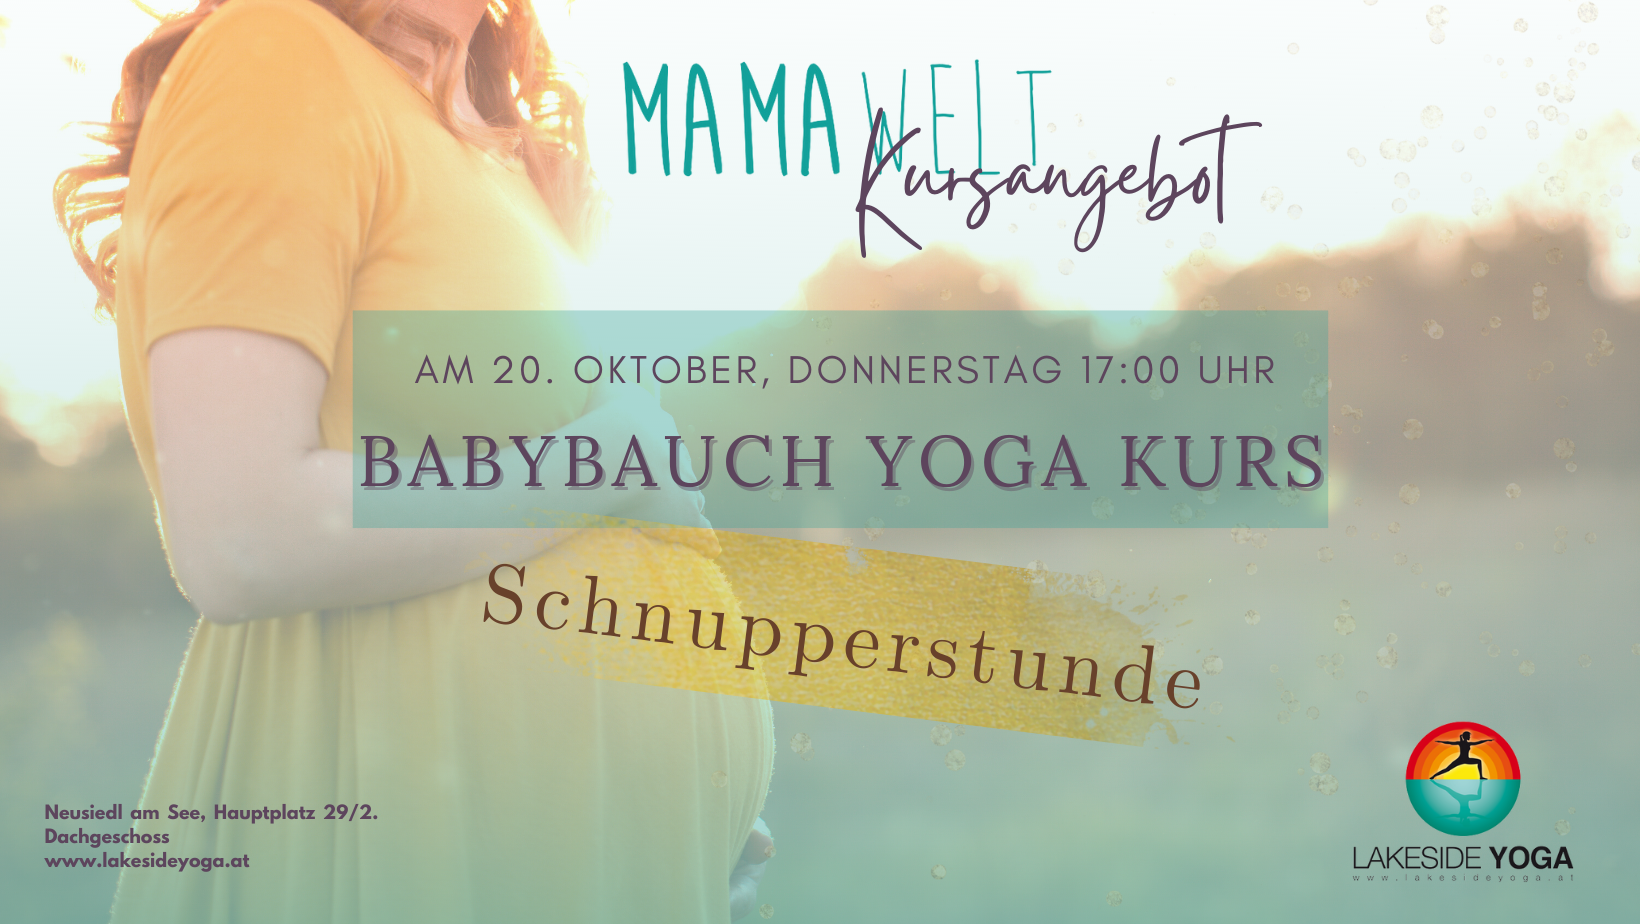 Babybauch Yoga- Yoga für die Schwangere